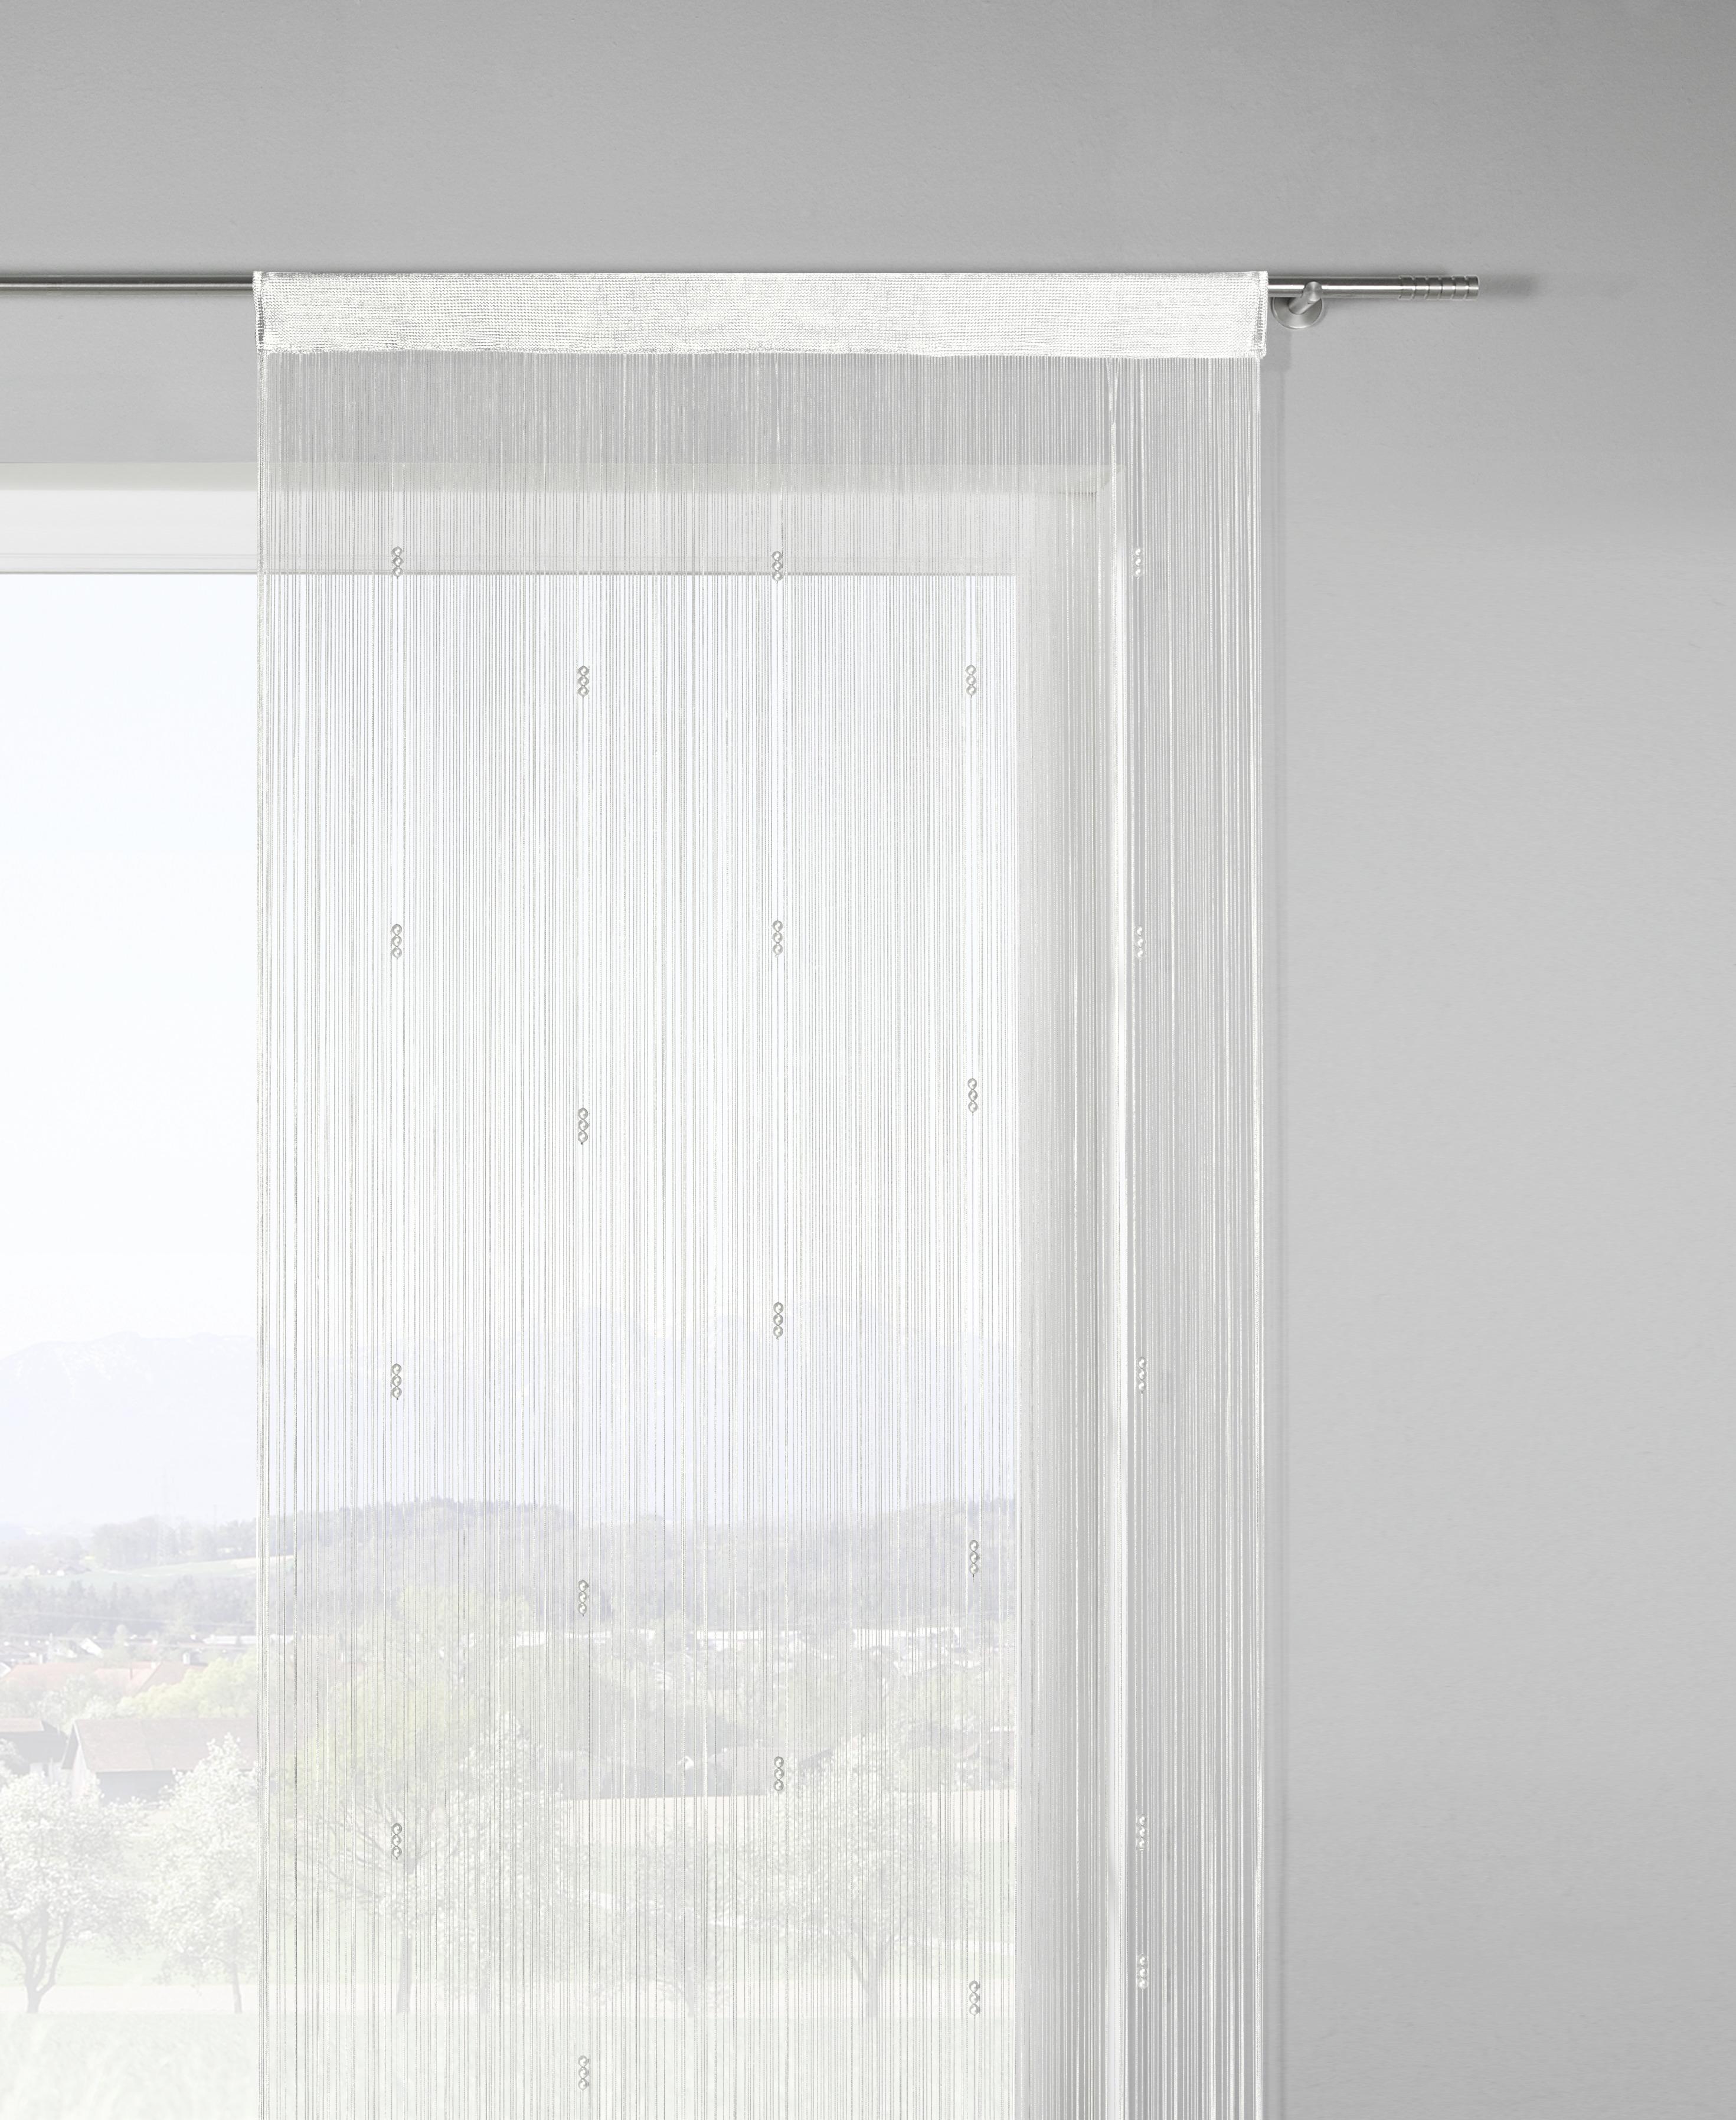 Fadenstore Perle in Weiß ca. 90x245cm - Weiß, ROMANTIK / LANDHAUS, Textil (90/245cm) - Modern Living